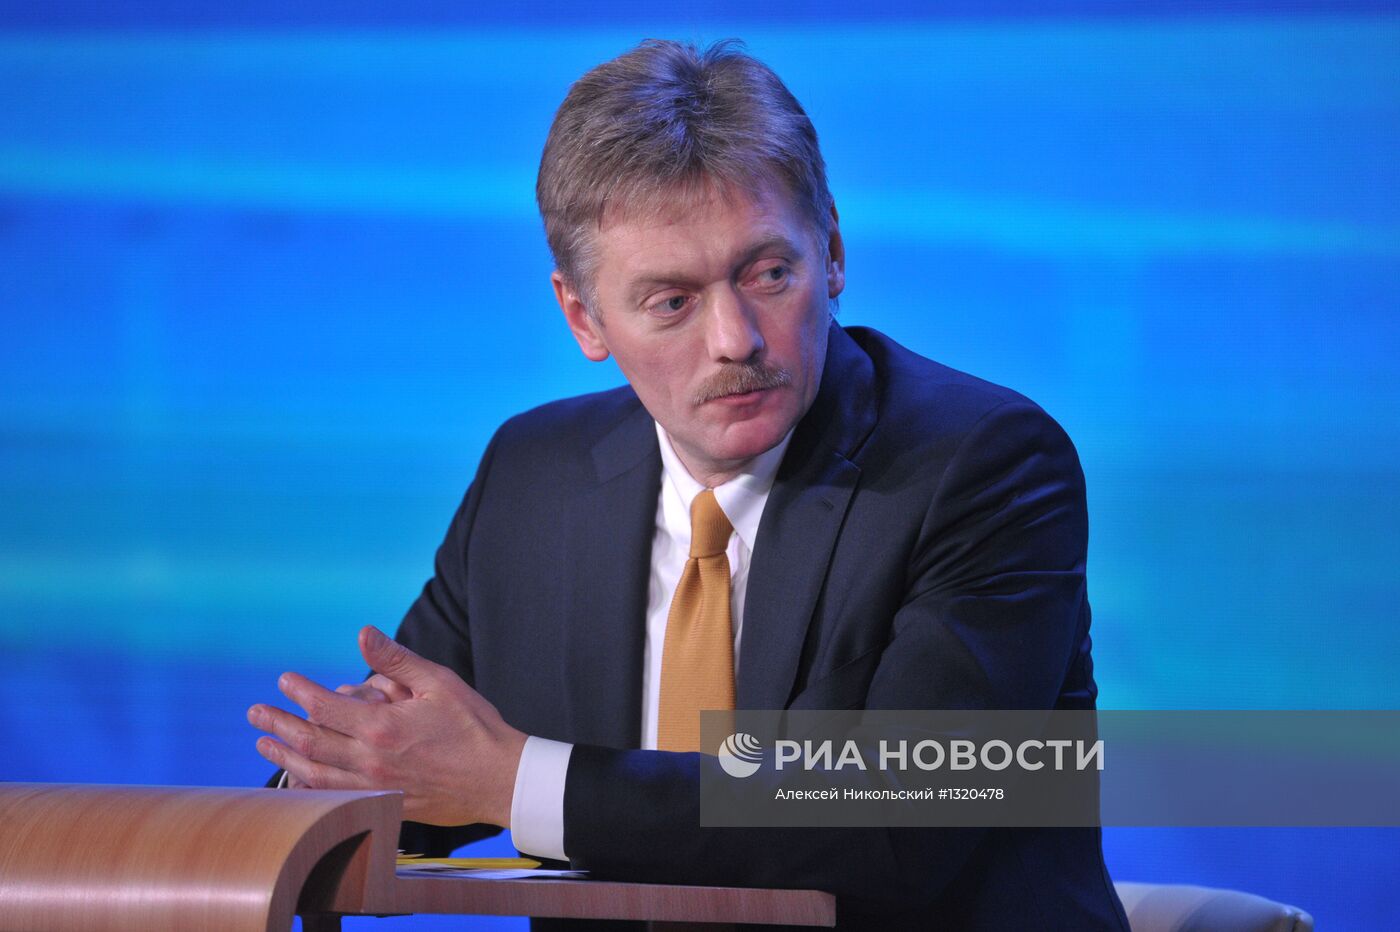 Дмитрий Песков на пресс-конференции Владимира Путина